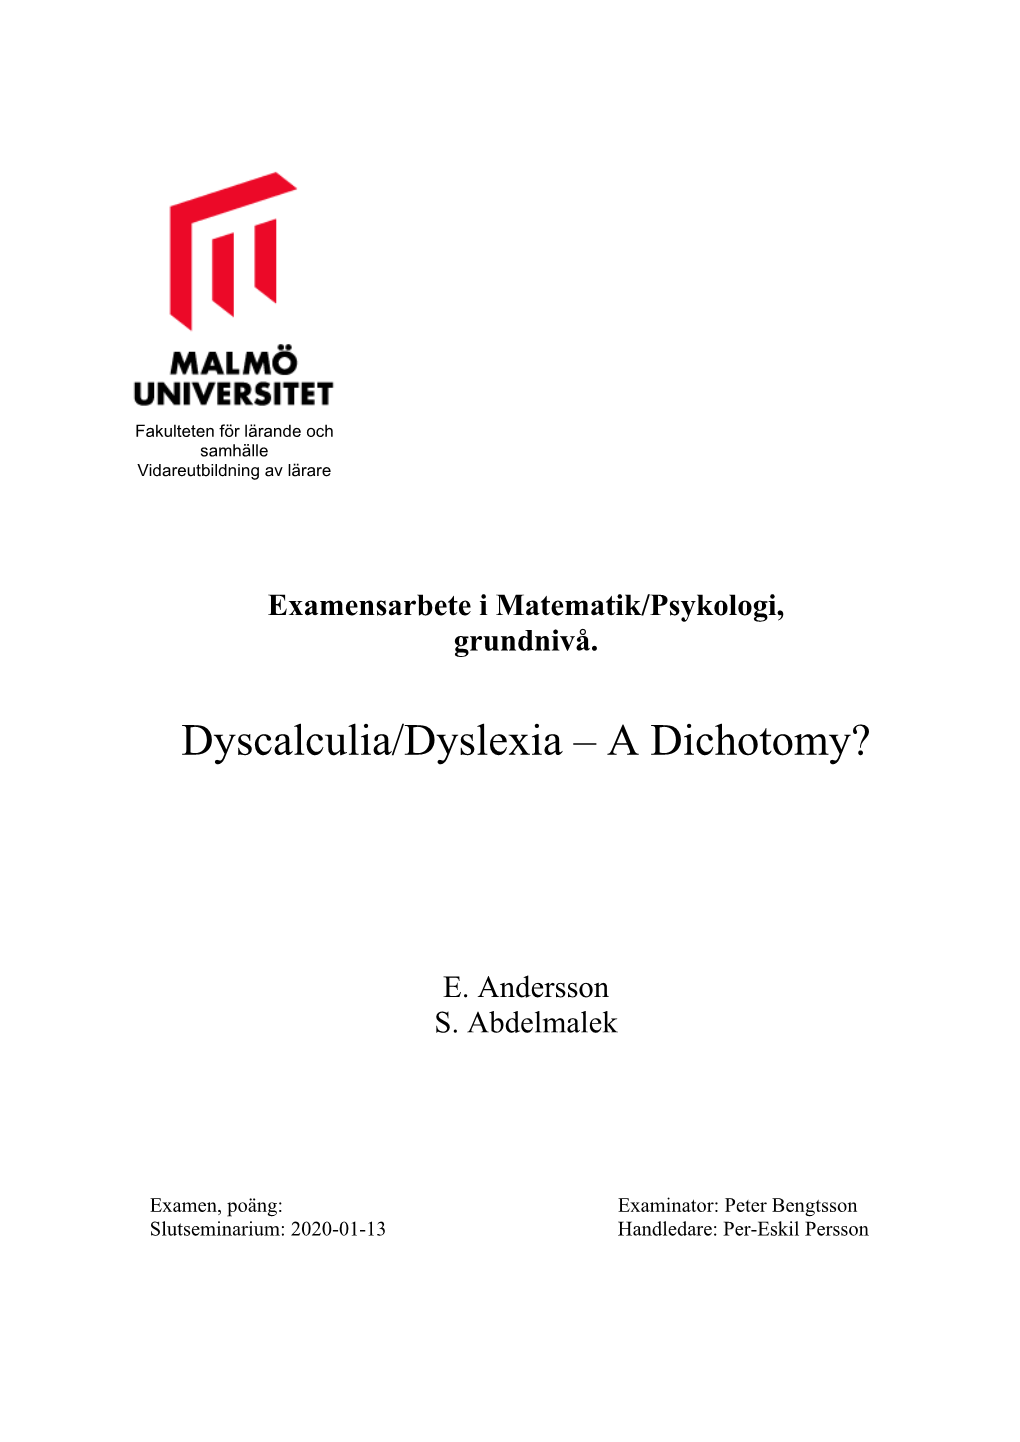 Dyscalculia/Dyslexia – a Dichotomy?